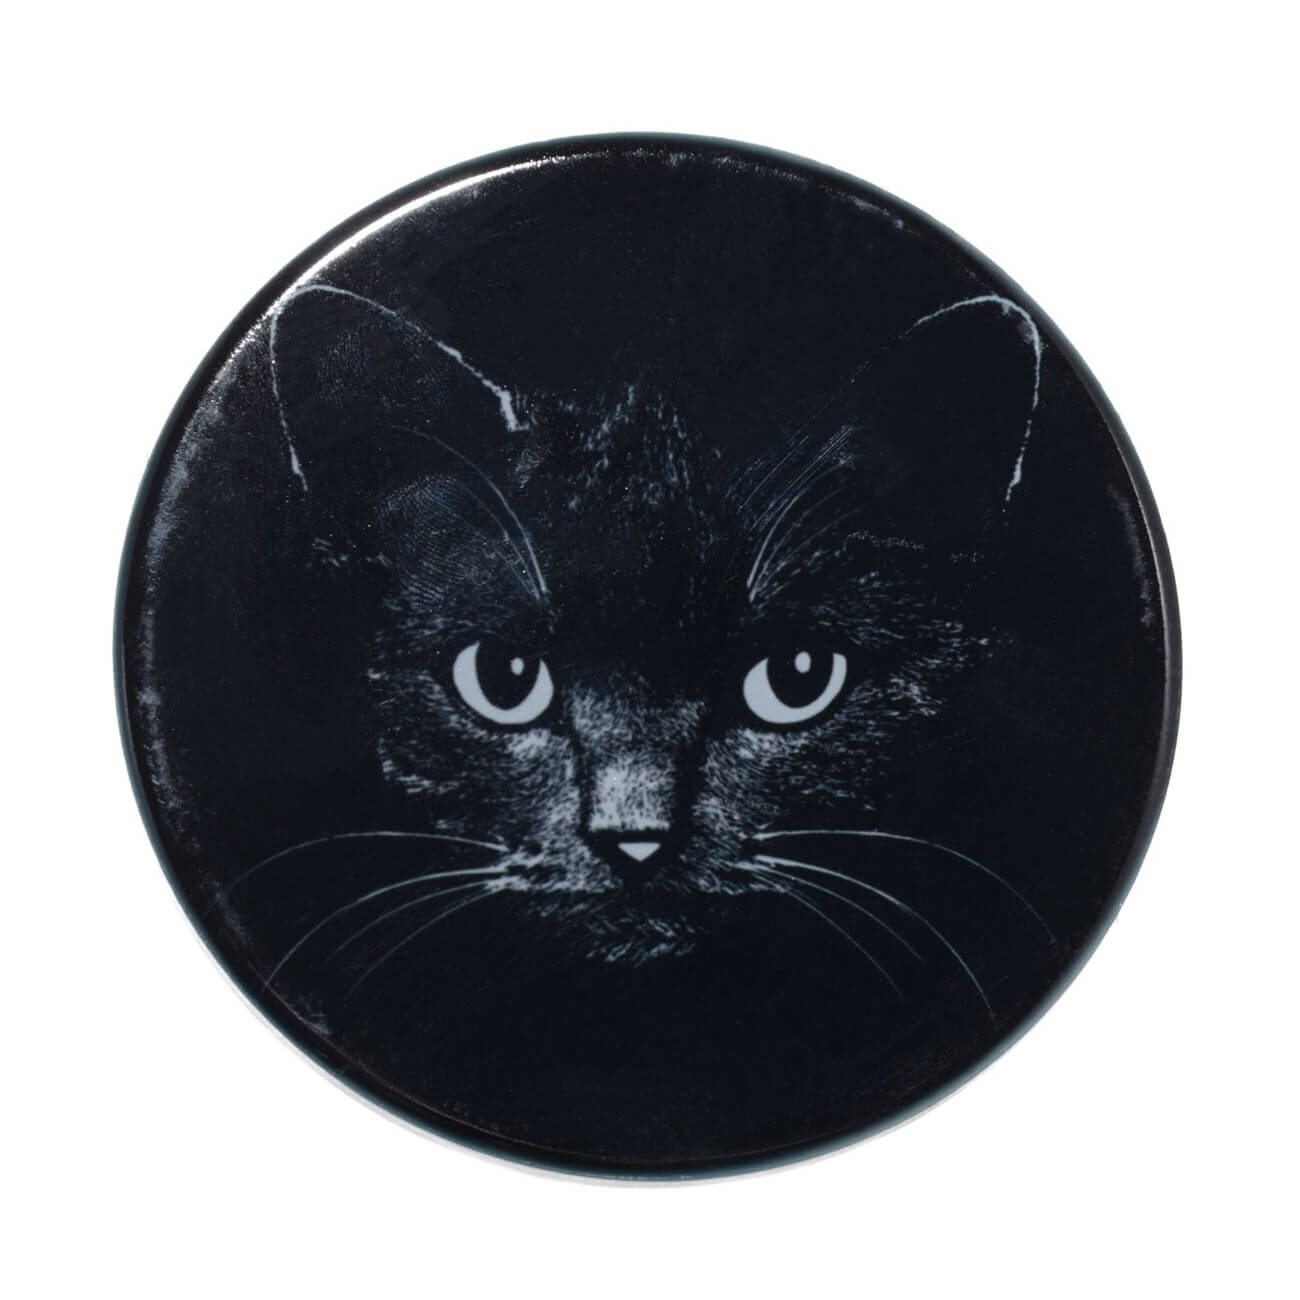 Подставка под кружку, 11x11 см, керамика/пробка, круглая, черная, Ночной кот, Cat night